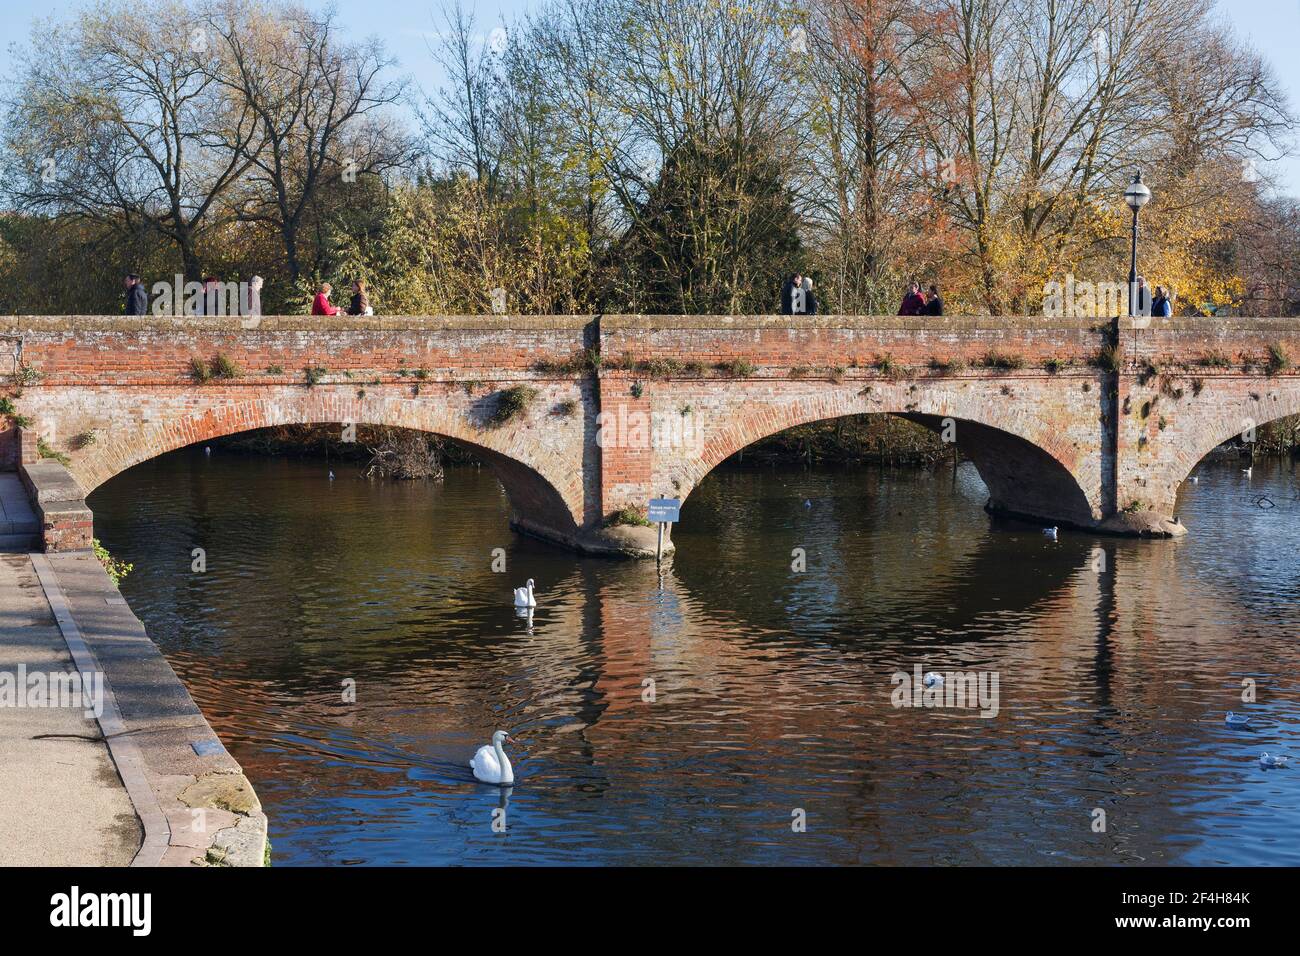 El puente Tramway al otro lado del río Avon, Stratford upon Avon. Foto de stock